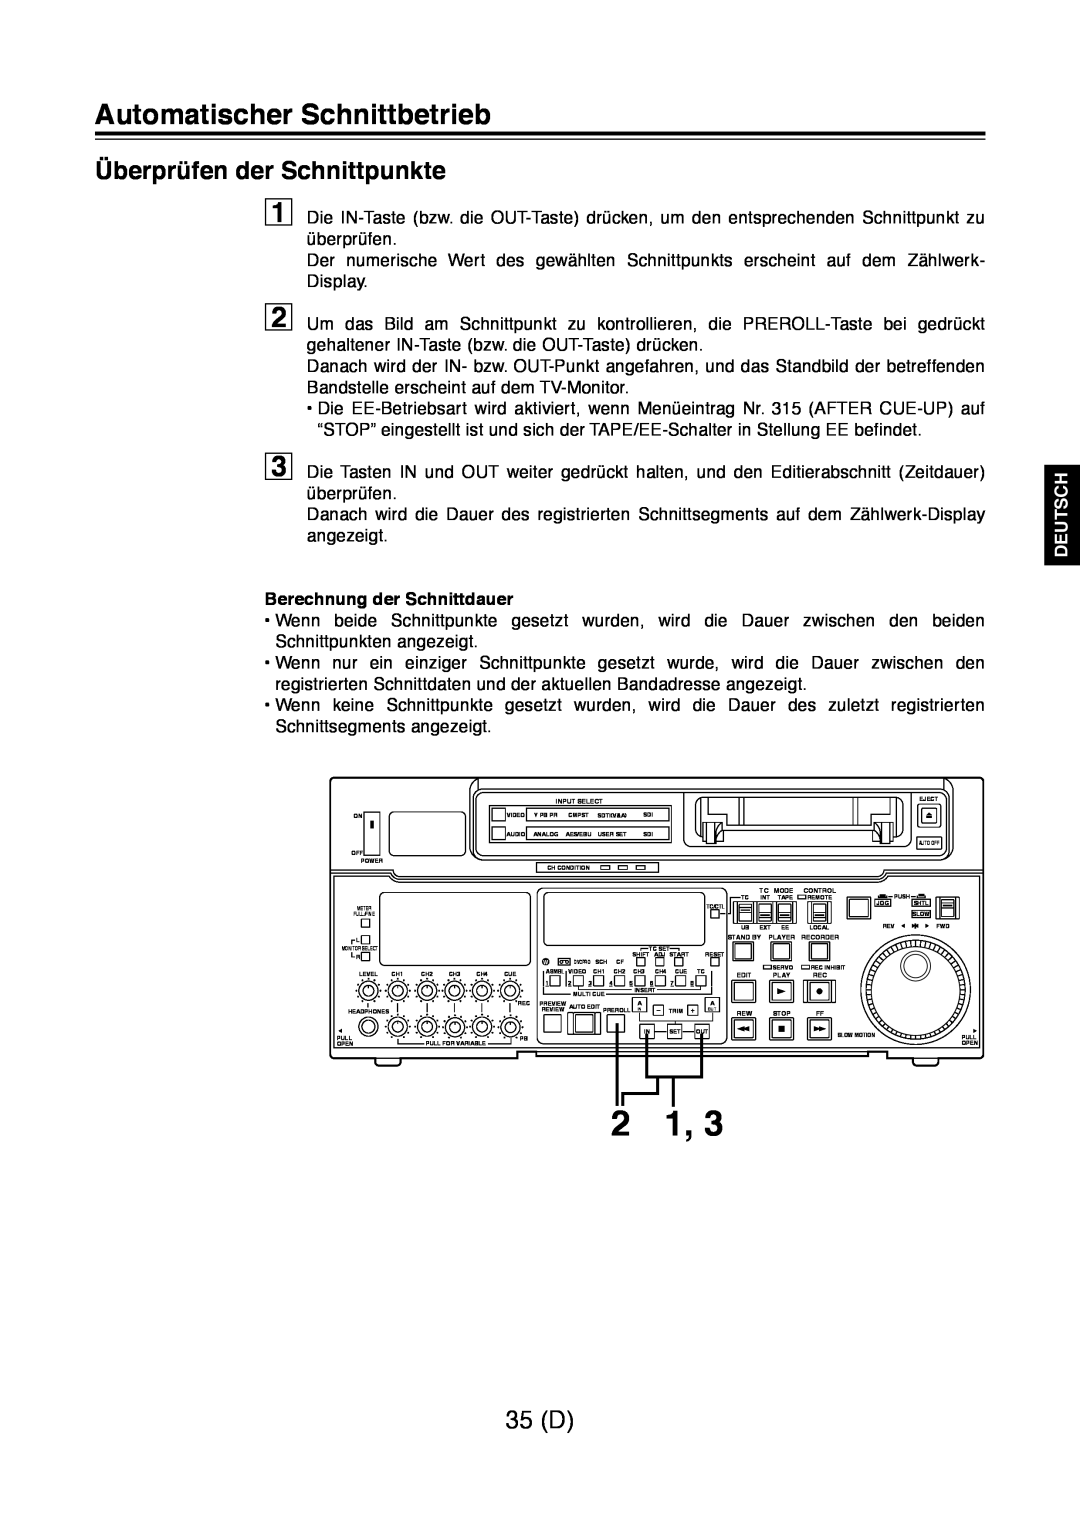 Panasonic AJ-D960 Überprüfen der Schnittpunkte, 35 D, Berechnung der Schnittdauer, Automatischer Schnittbetrieb, Deutsch 